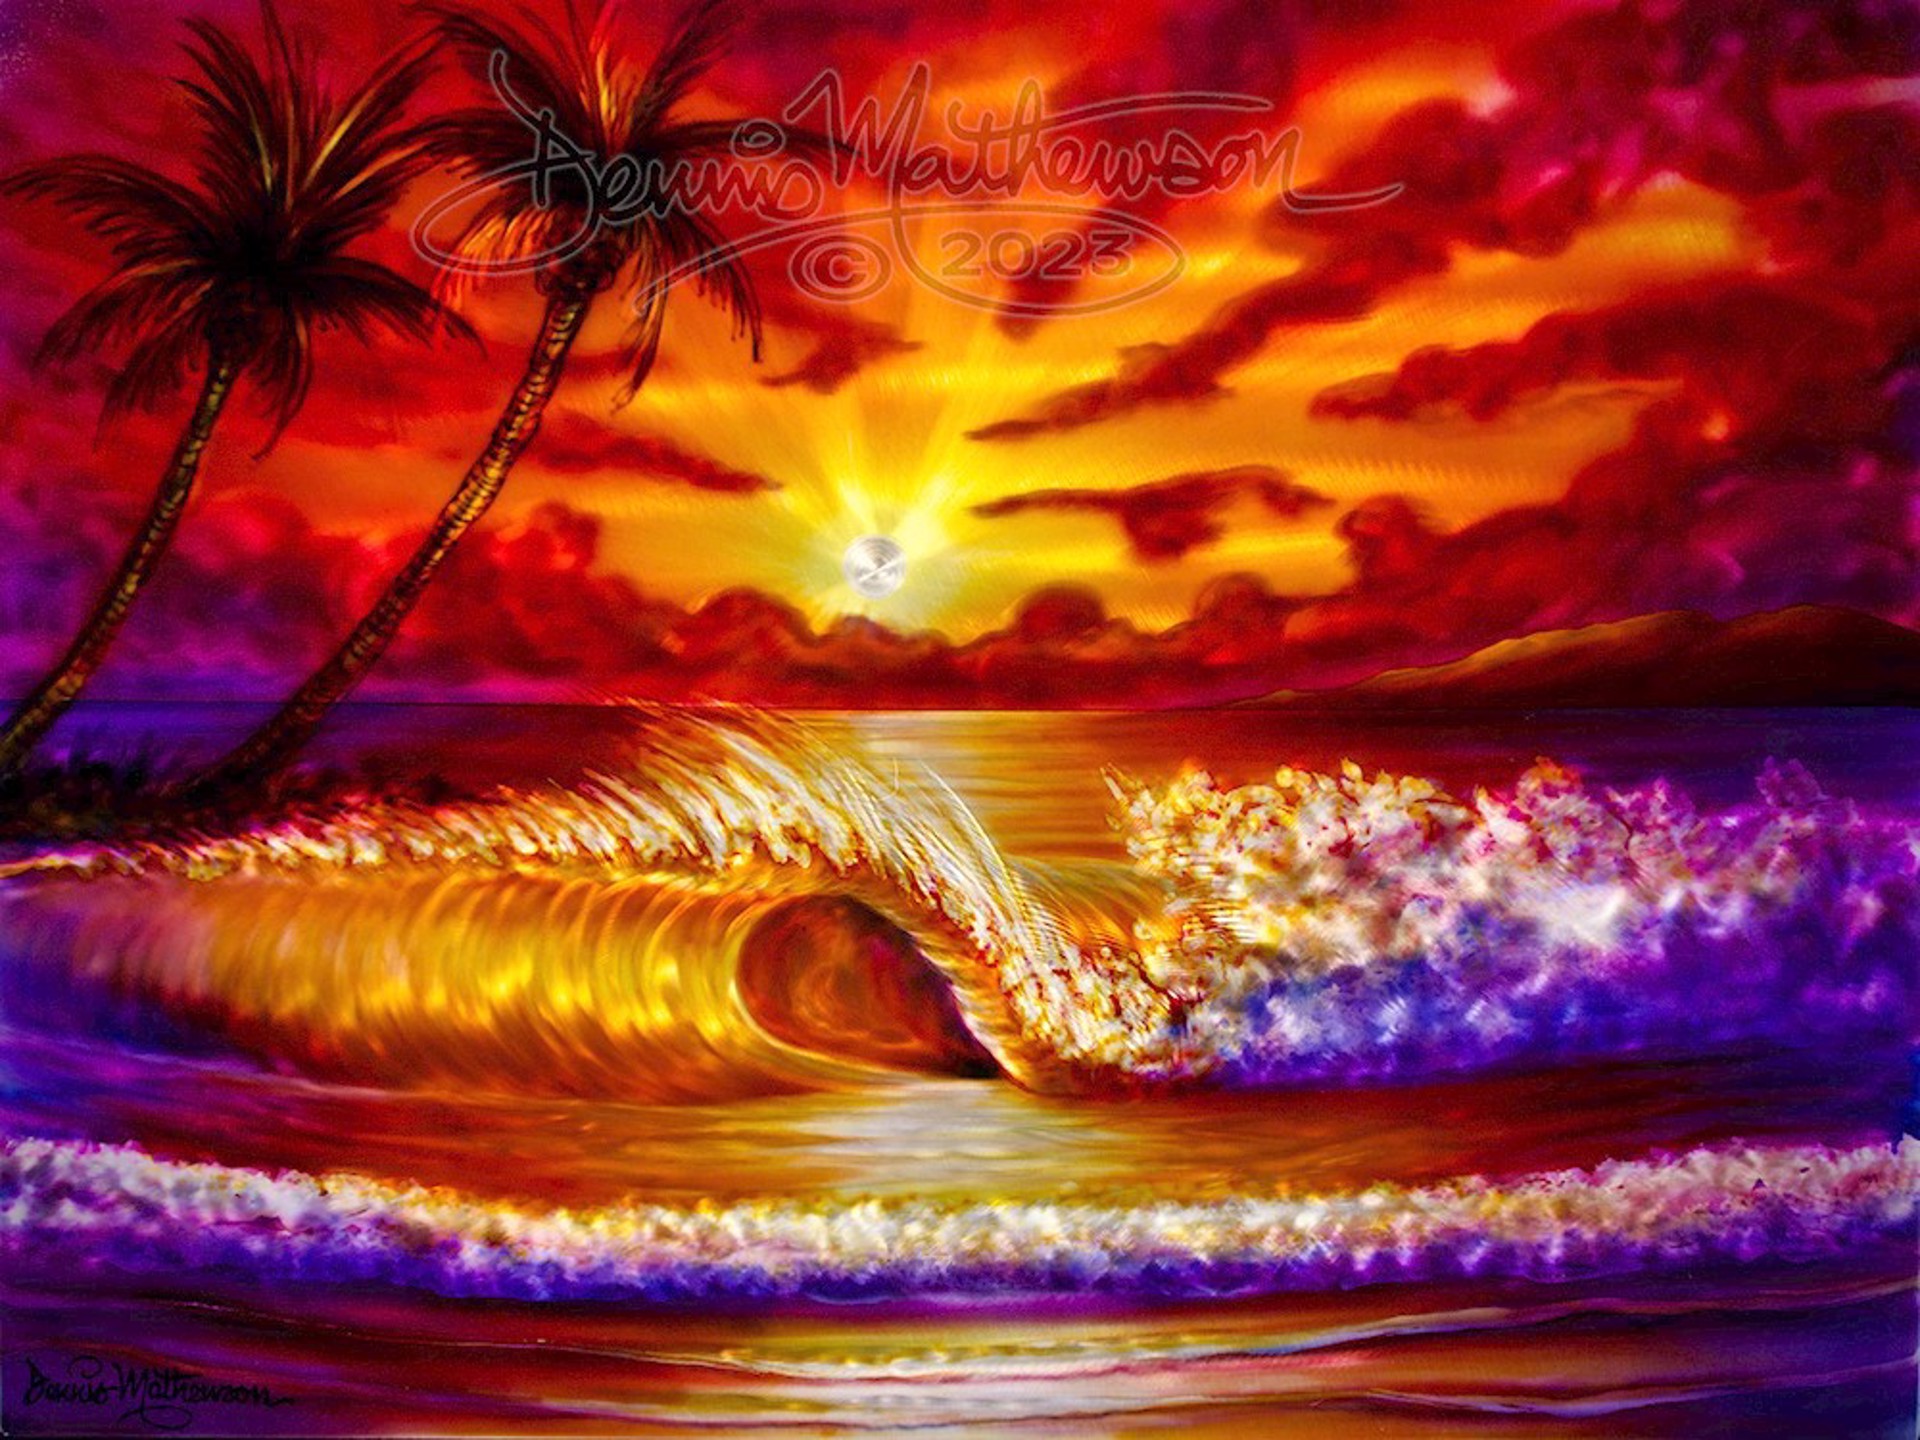 Surf Spectrum by Dennis Mathewson